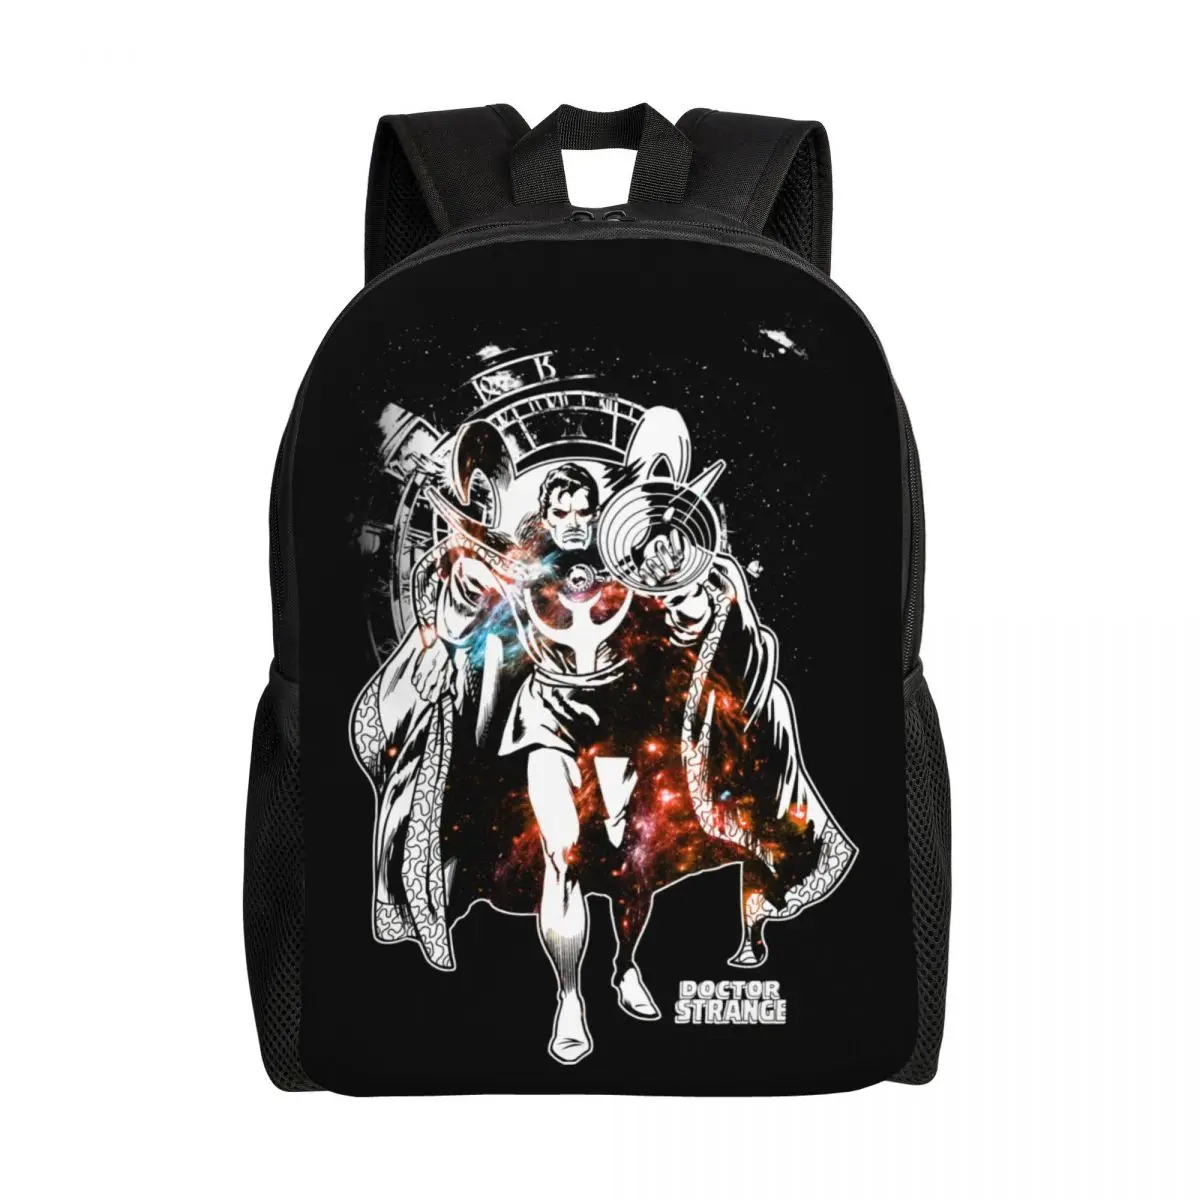 

Custom Doctor Strange Time Cartoon Backpacks for Girls Boys College School Travel Bags Men Women Bookbag Fits 15 Inch Laptop